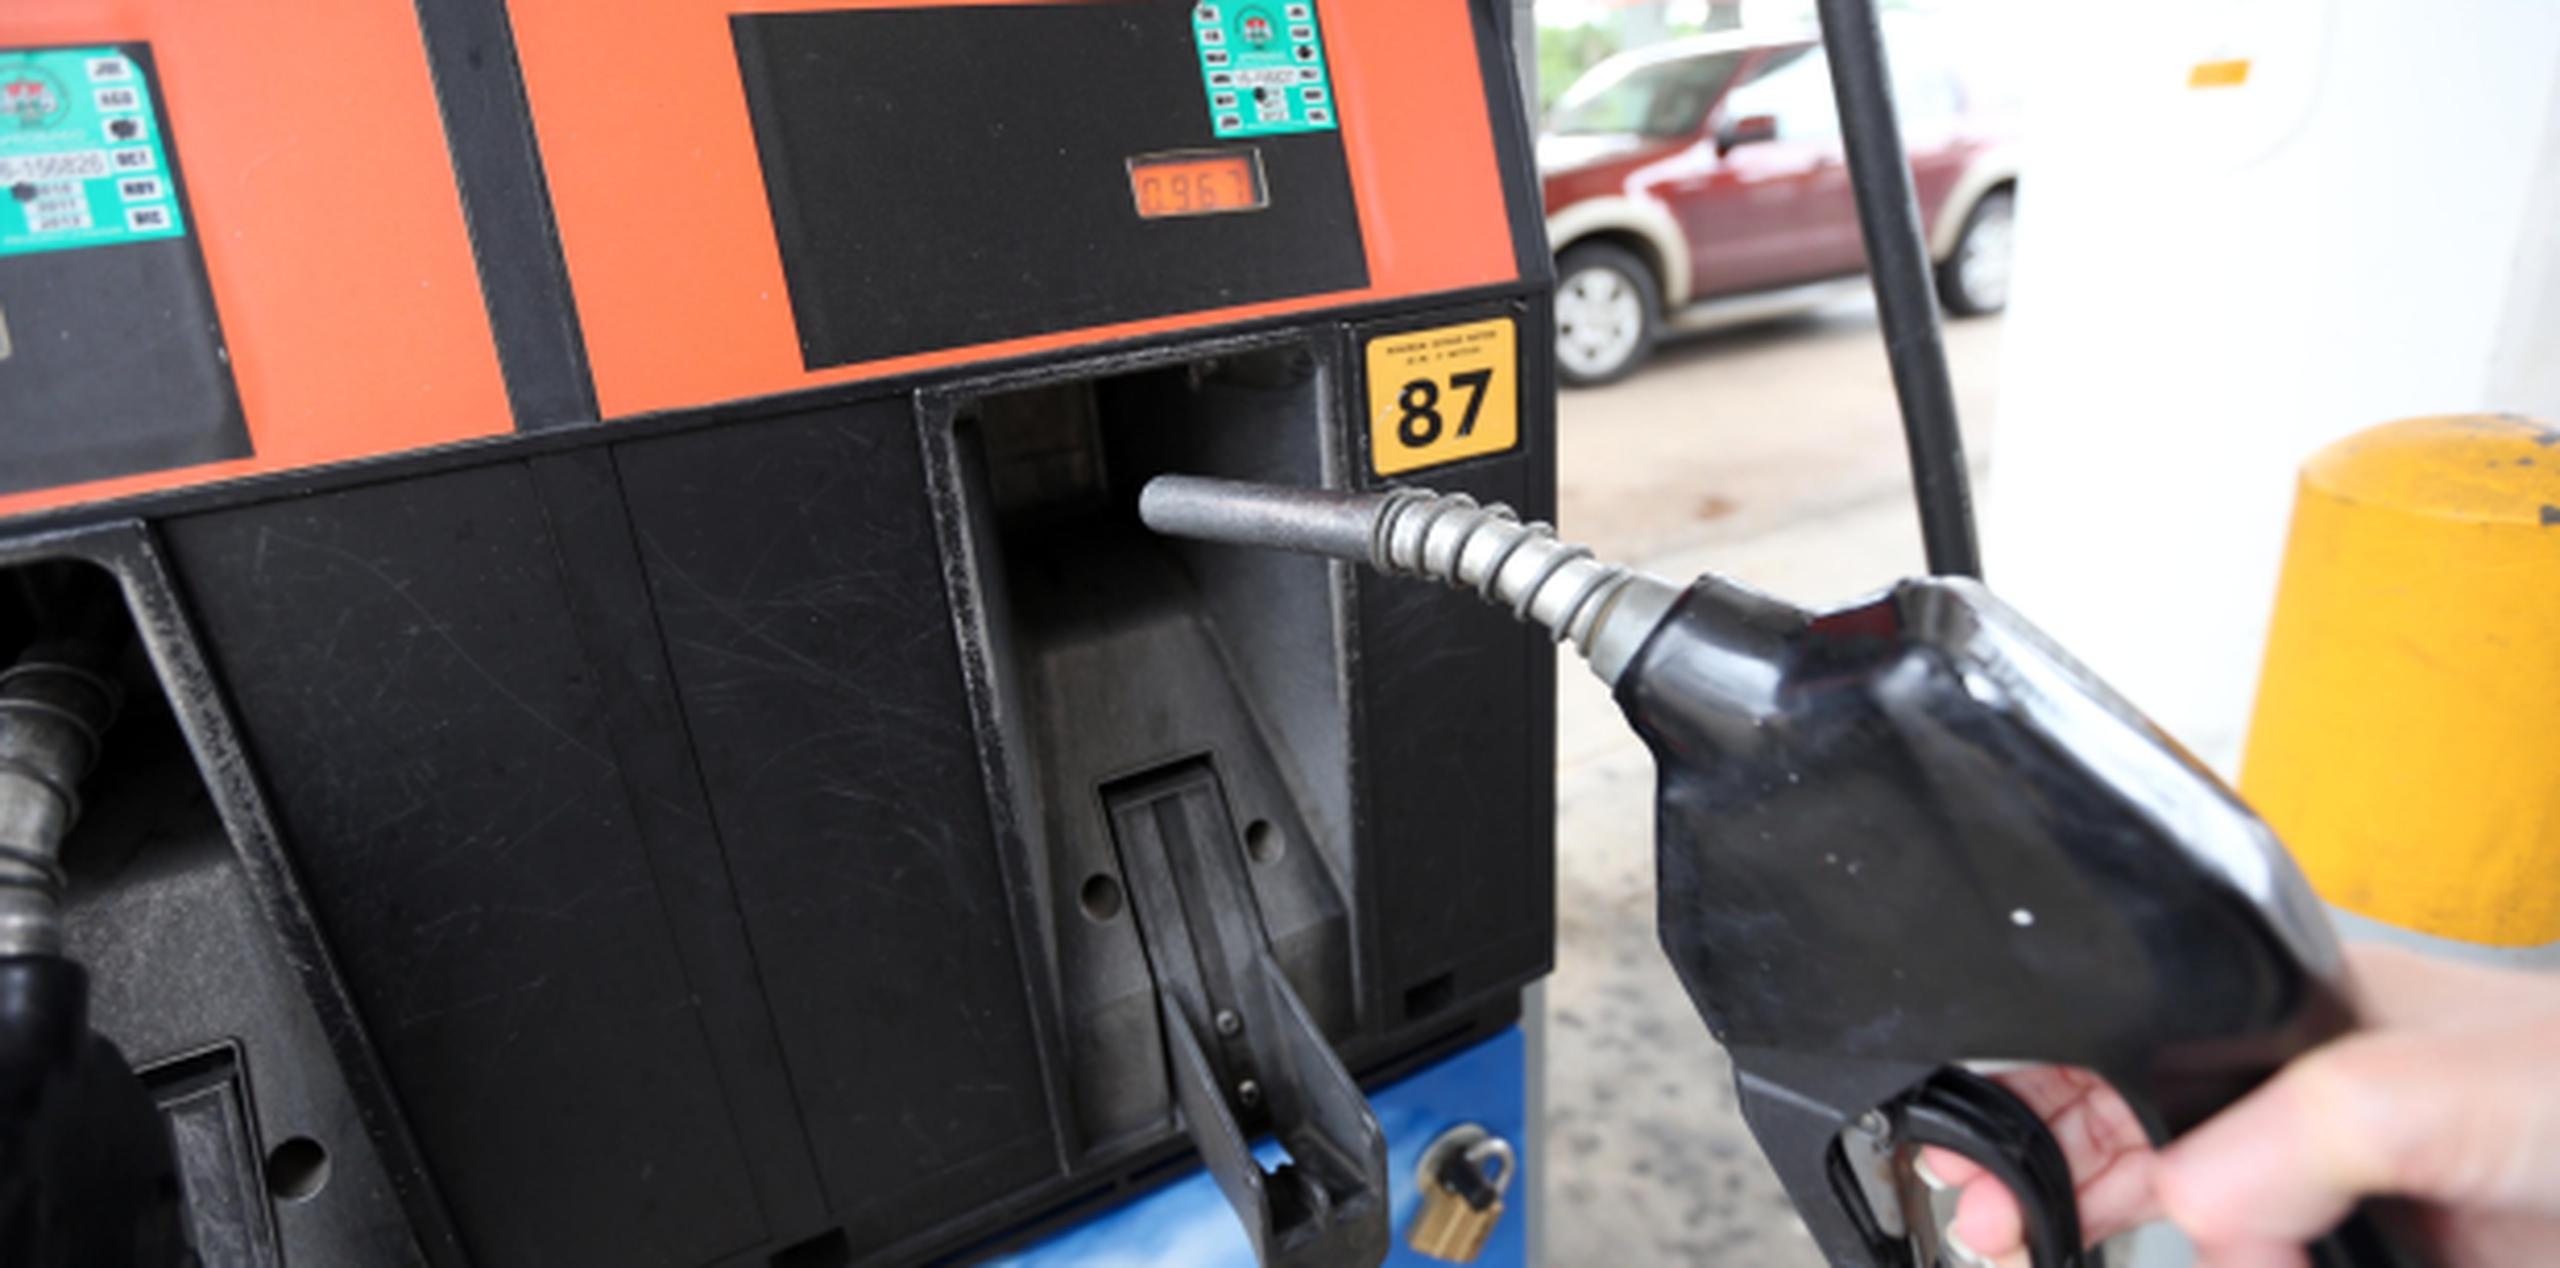 Conducir a exceso de velocidad gasta mucha gasolina, además de que puede producirte multas, que afectarán tus finanzas al ser un gasto no planeado. (Archivo)